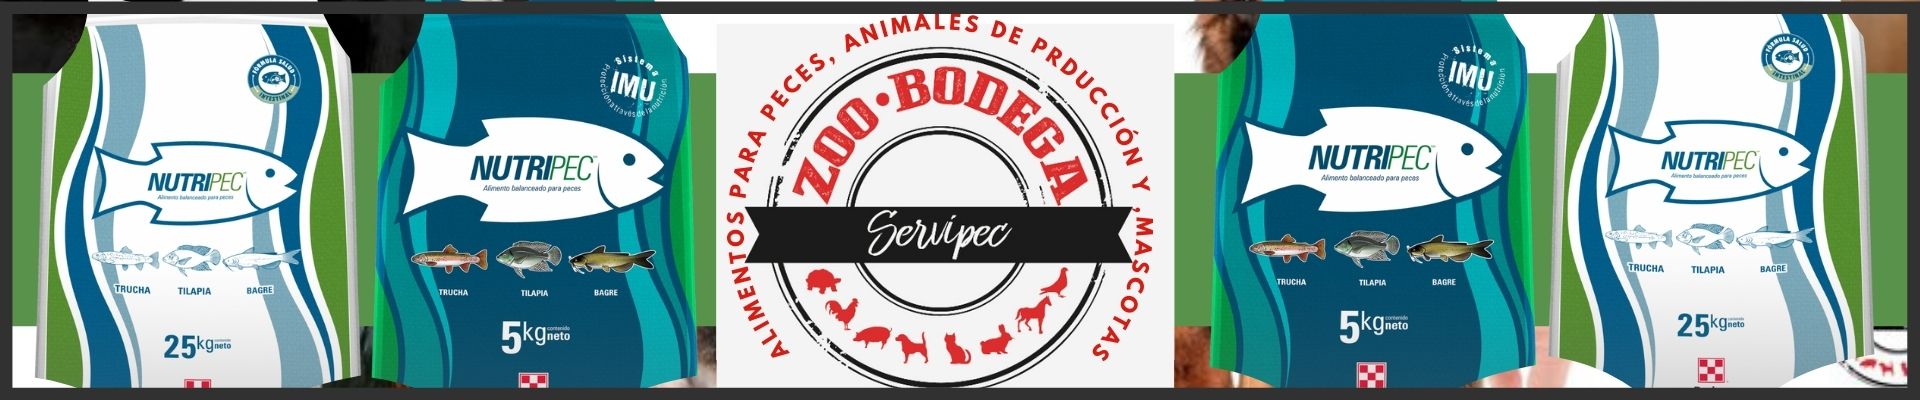 zoo-bodega agroshow banner